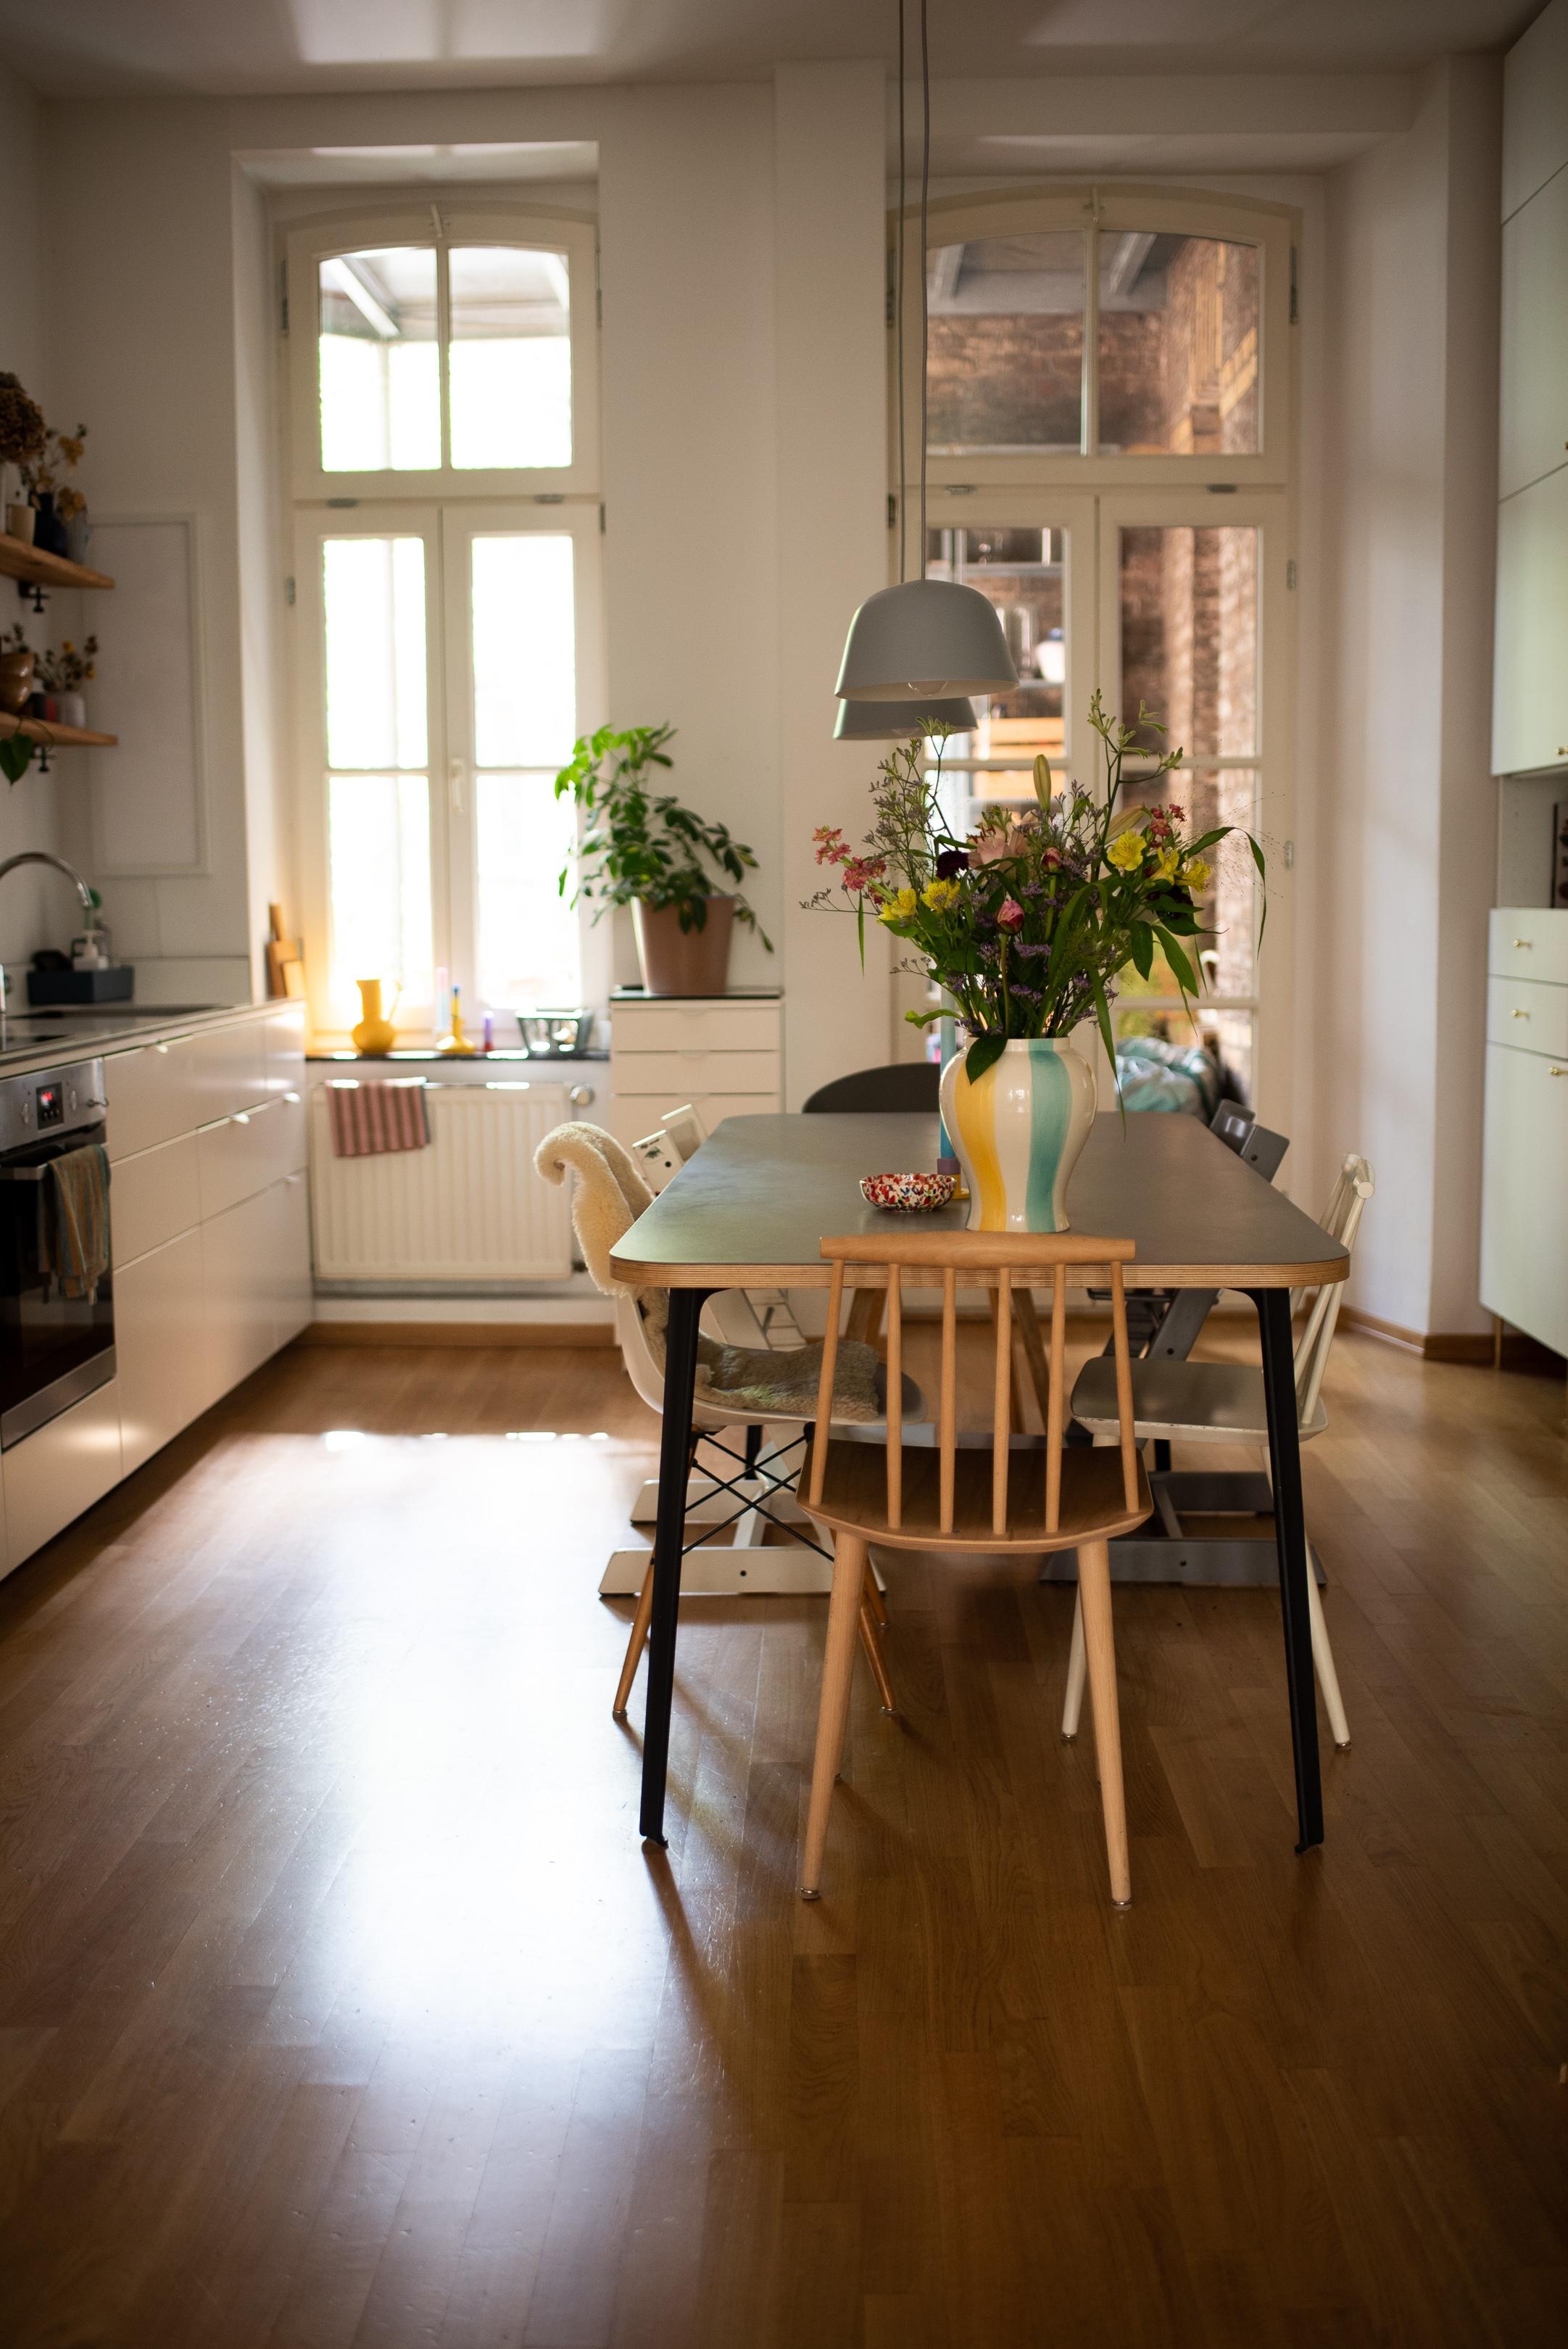 Schönen Montag! #wohnküche #esstisch #kitchenideas #kitchen #kitchentable #altbauliebe